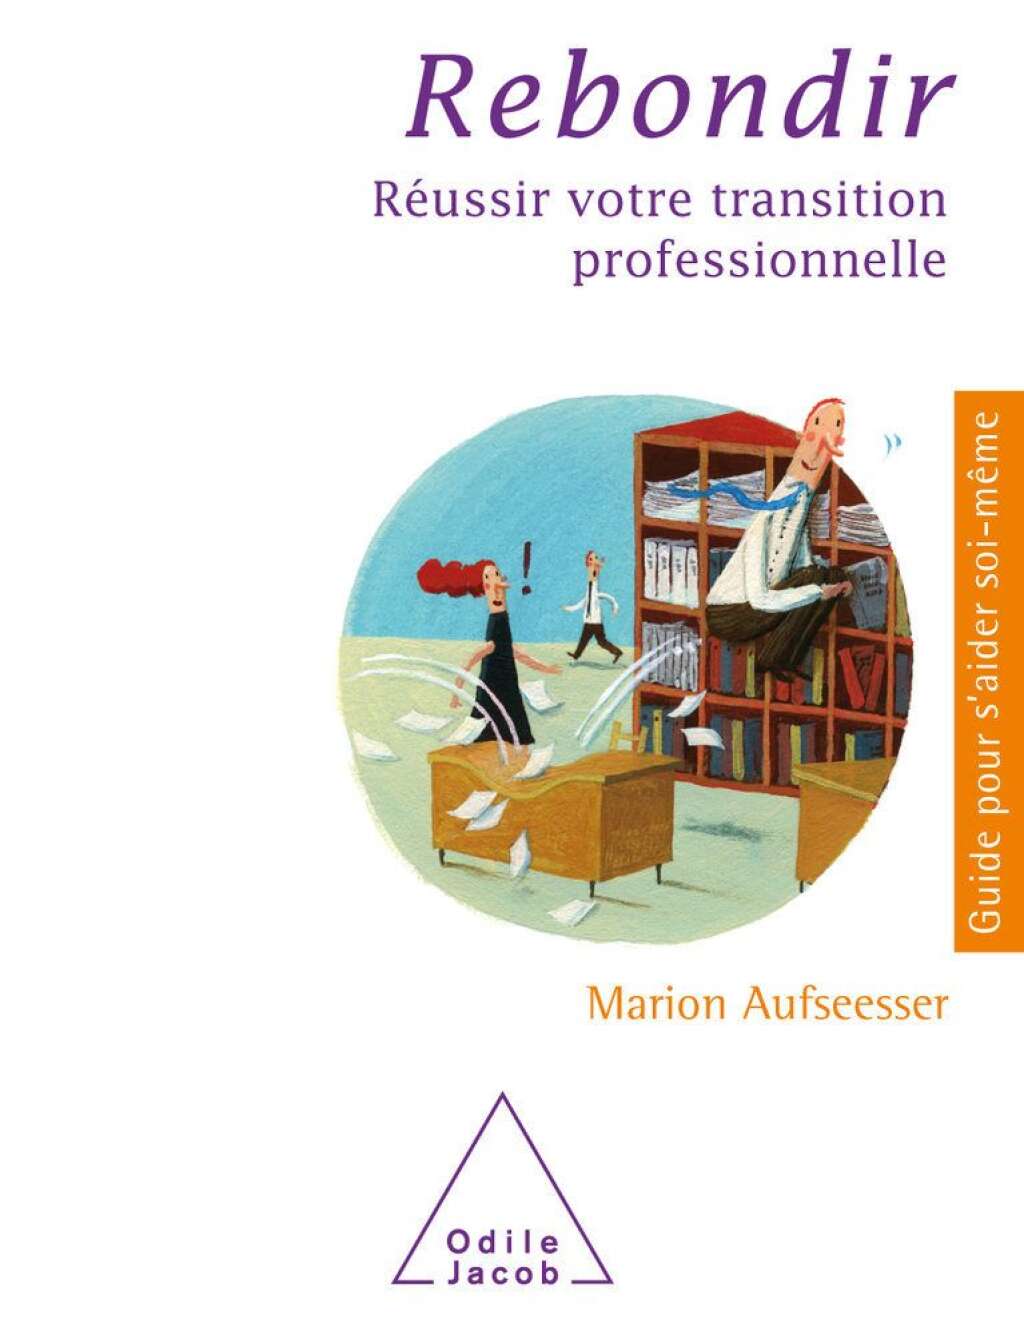 Le livre - <em>Rebondir, réussir votre transition professionnelle</em>, par Marion Aufseesser, (17€) aux éditions Odile Jacob.